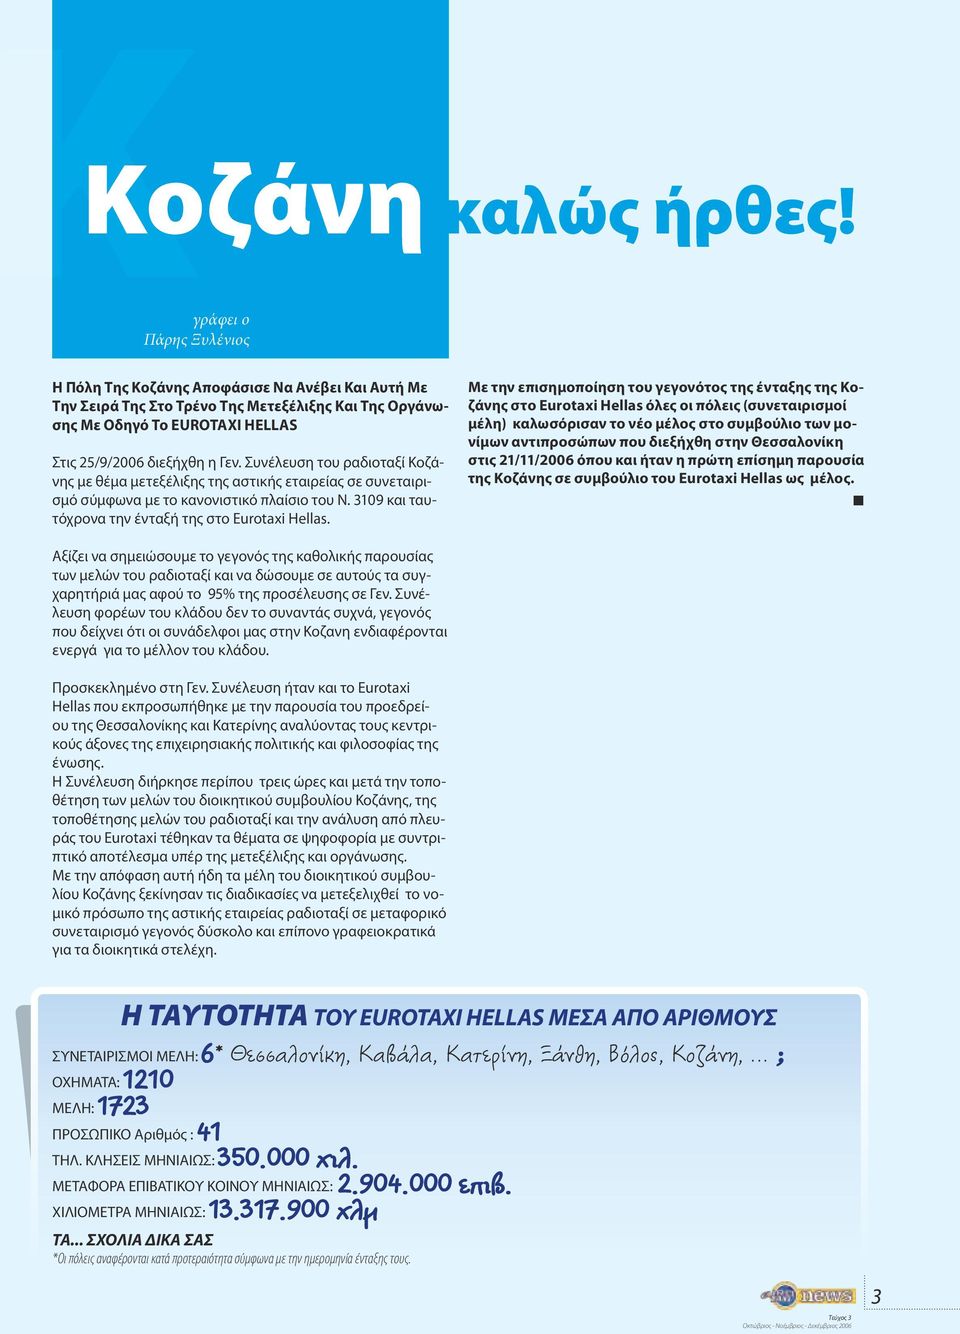 Συνέλευση του ραδιοταξί Κοζάνης με θέμα μετεξέλιξης της αστικής εταιρείας σε συνεταιρισμό σύμφωνα με το κανονιστικό πλαίσιο του Ν. 3109 και ταυτόχρονα την ένταξή της στο Eurotaxi Hellas.